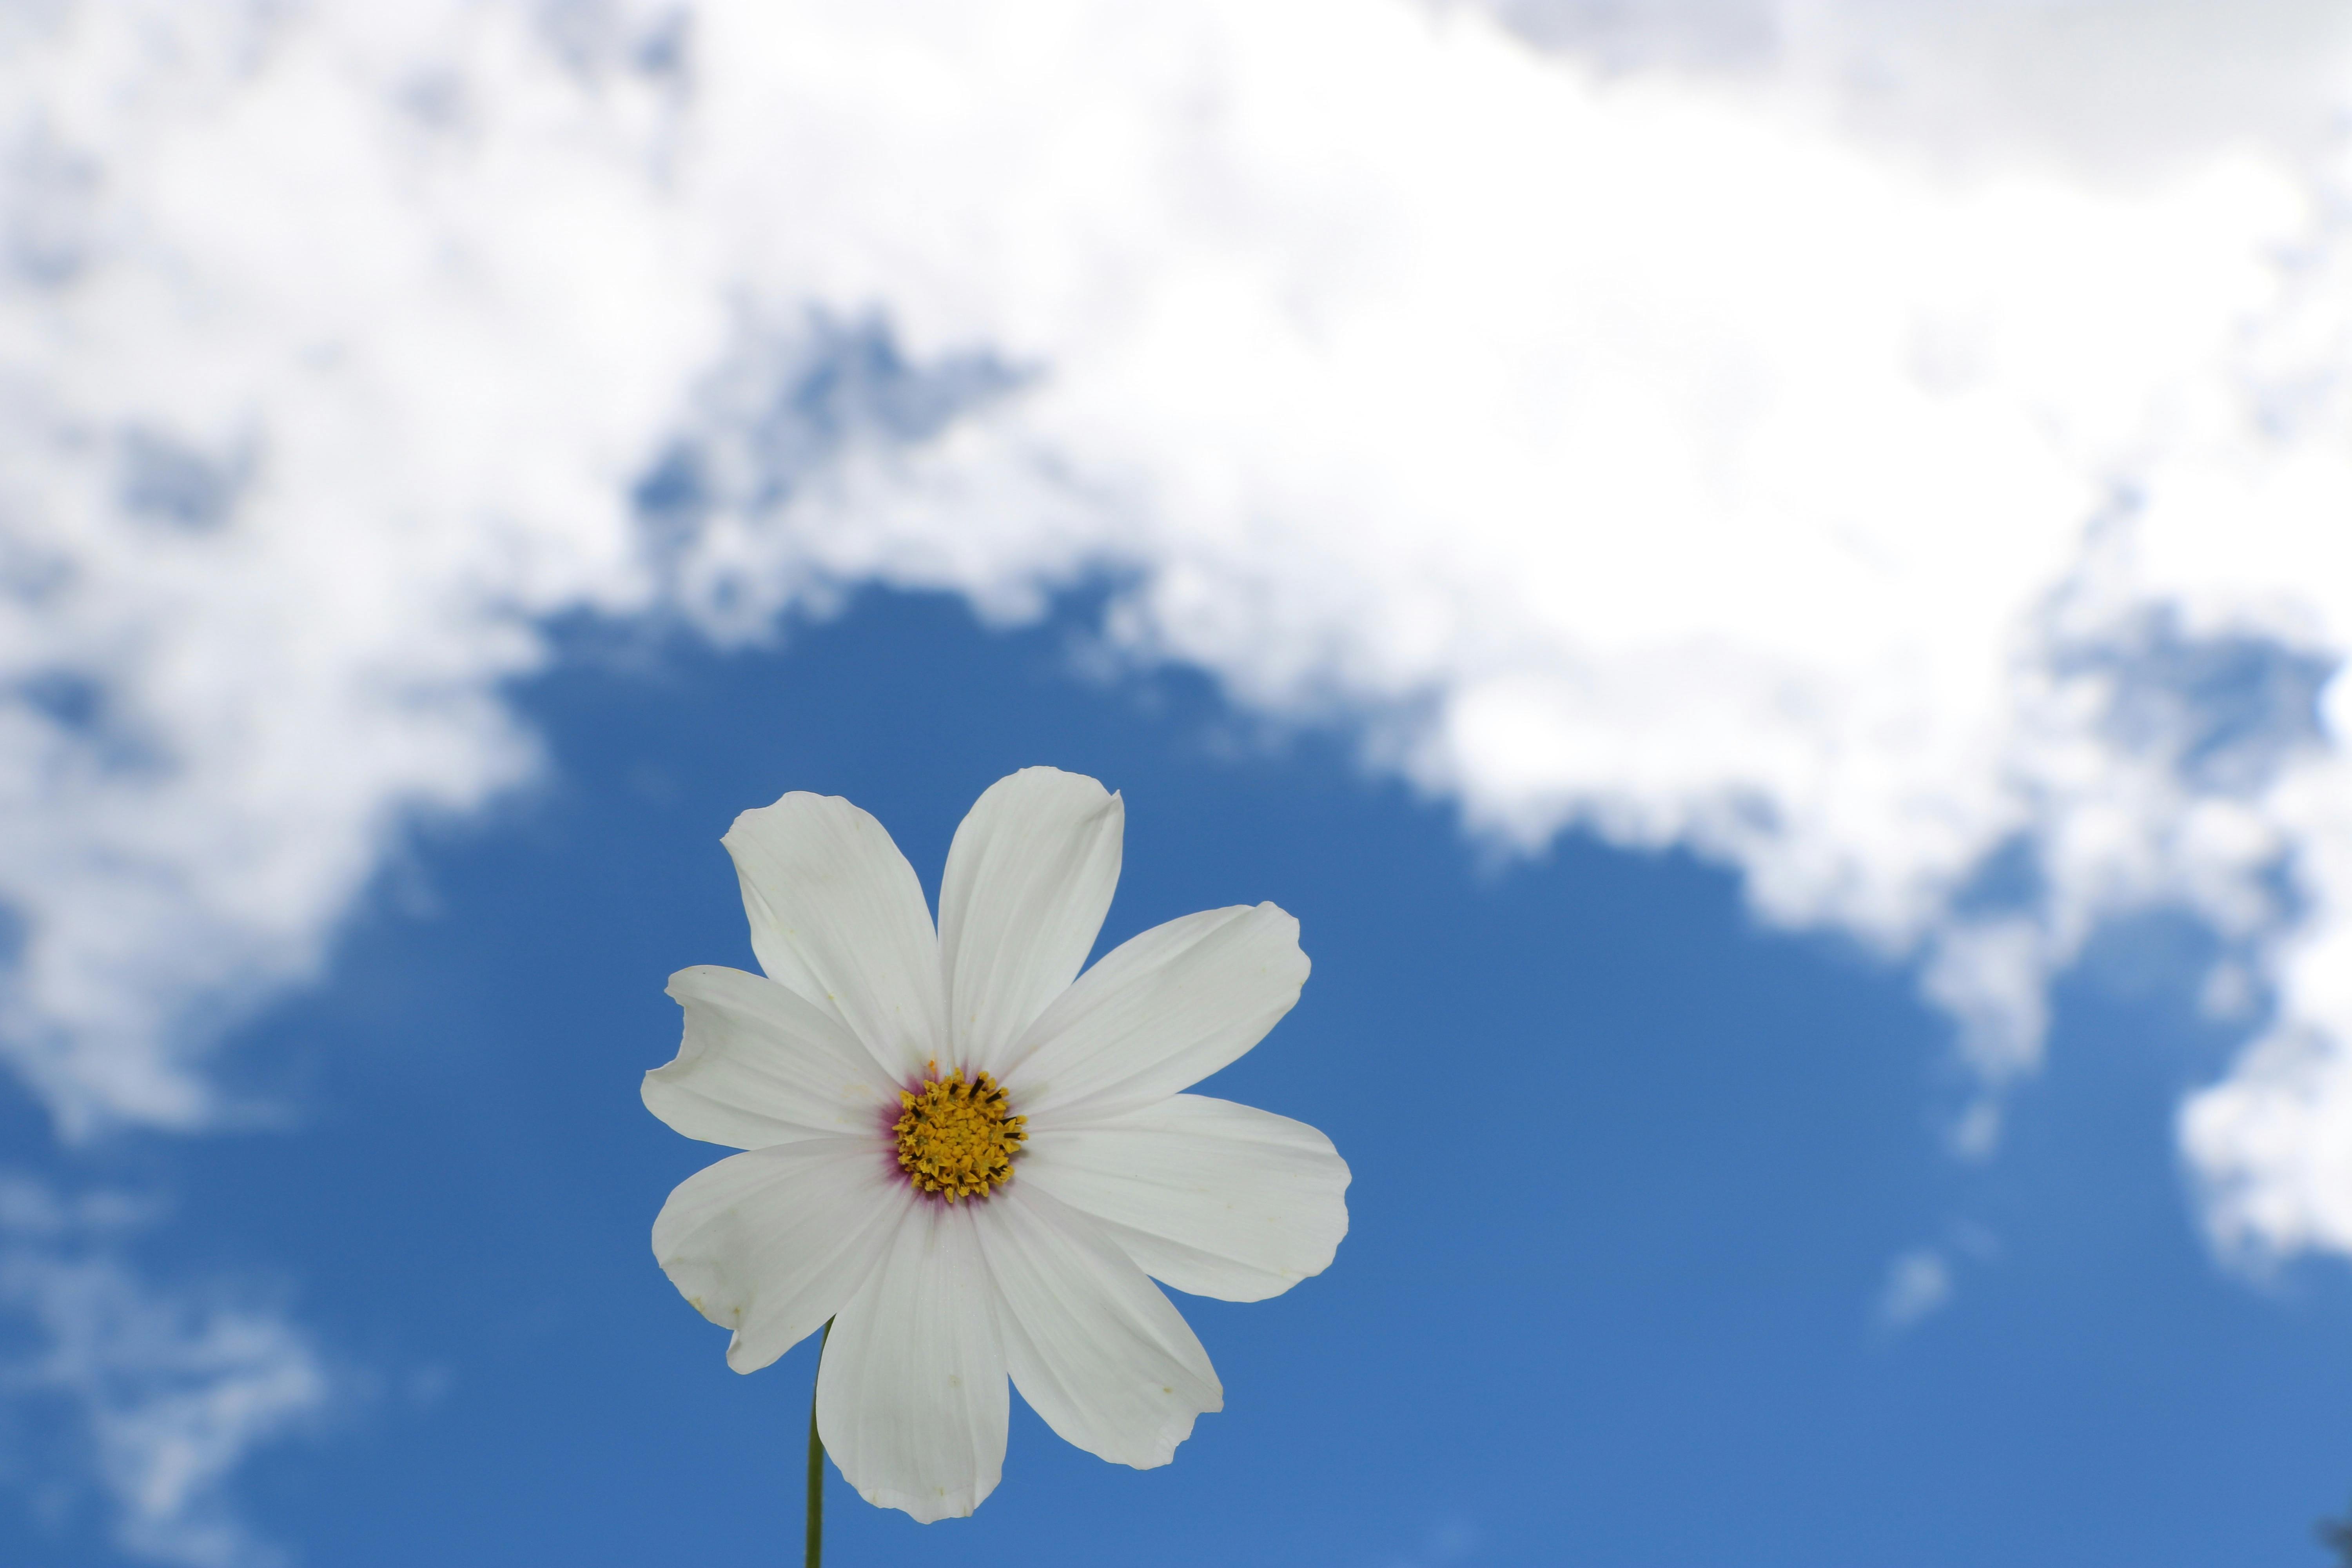 Hãy khám phá vẻ đẹp thanh khiết của hoa cúc trắng qua hình ảnh đẹp nhất được chụp lại. Sắc trắng tinh khôi của hoa cúc sẽ làm say mê bất kỳ ai đối diện với chúng.